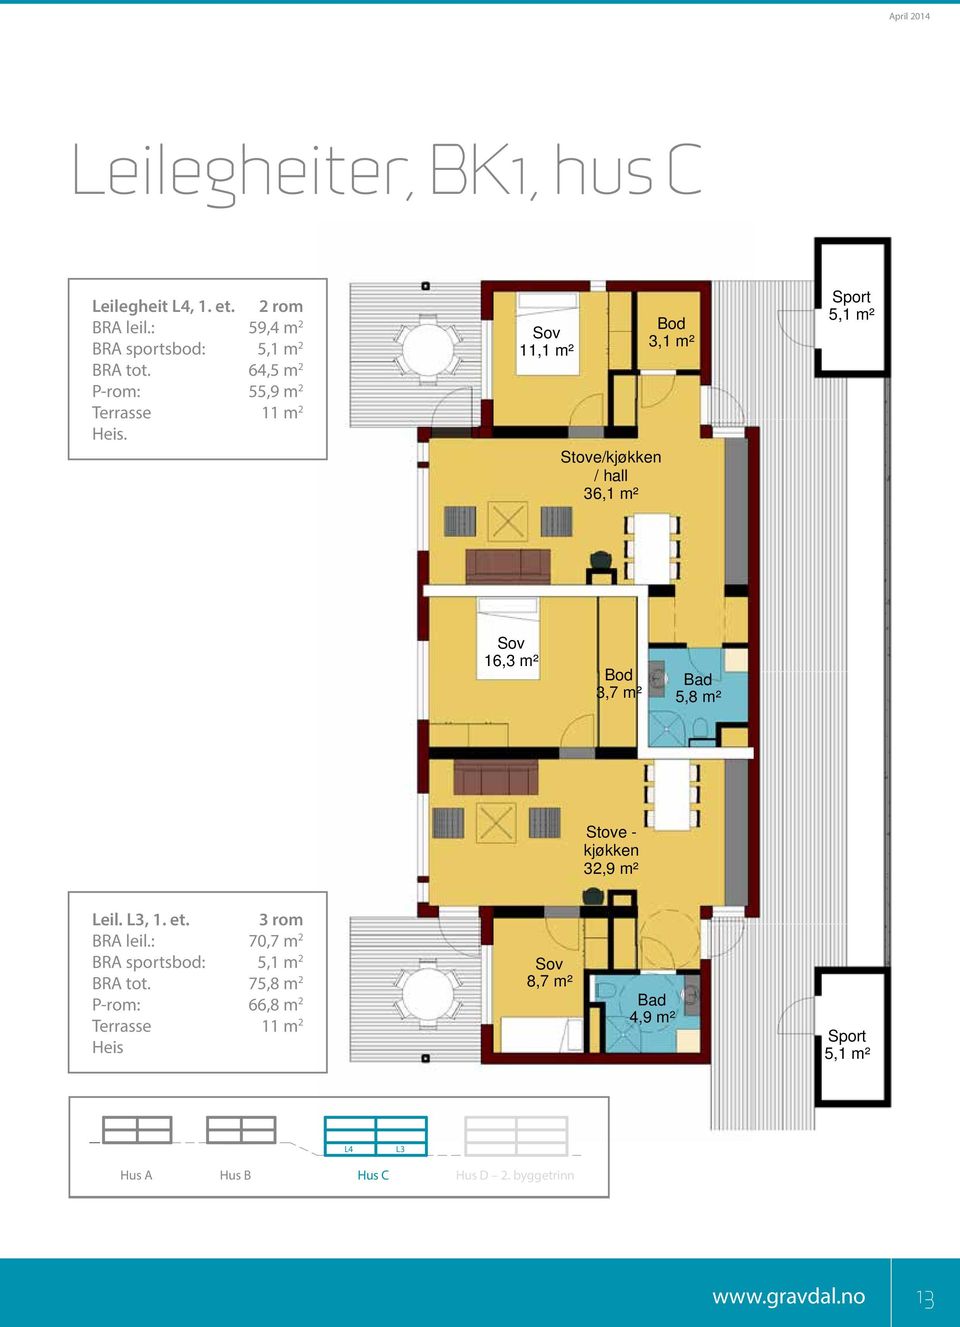 11,1 m² Stove/kjøkken / hall 36,1 m² Bod 3,1 m² Sport 5,1 m² 16,3 m² Bod 3,7 m² Bad 5,8 m² Stove - kjøkken 32,9 m² Leil.